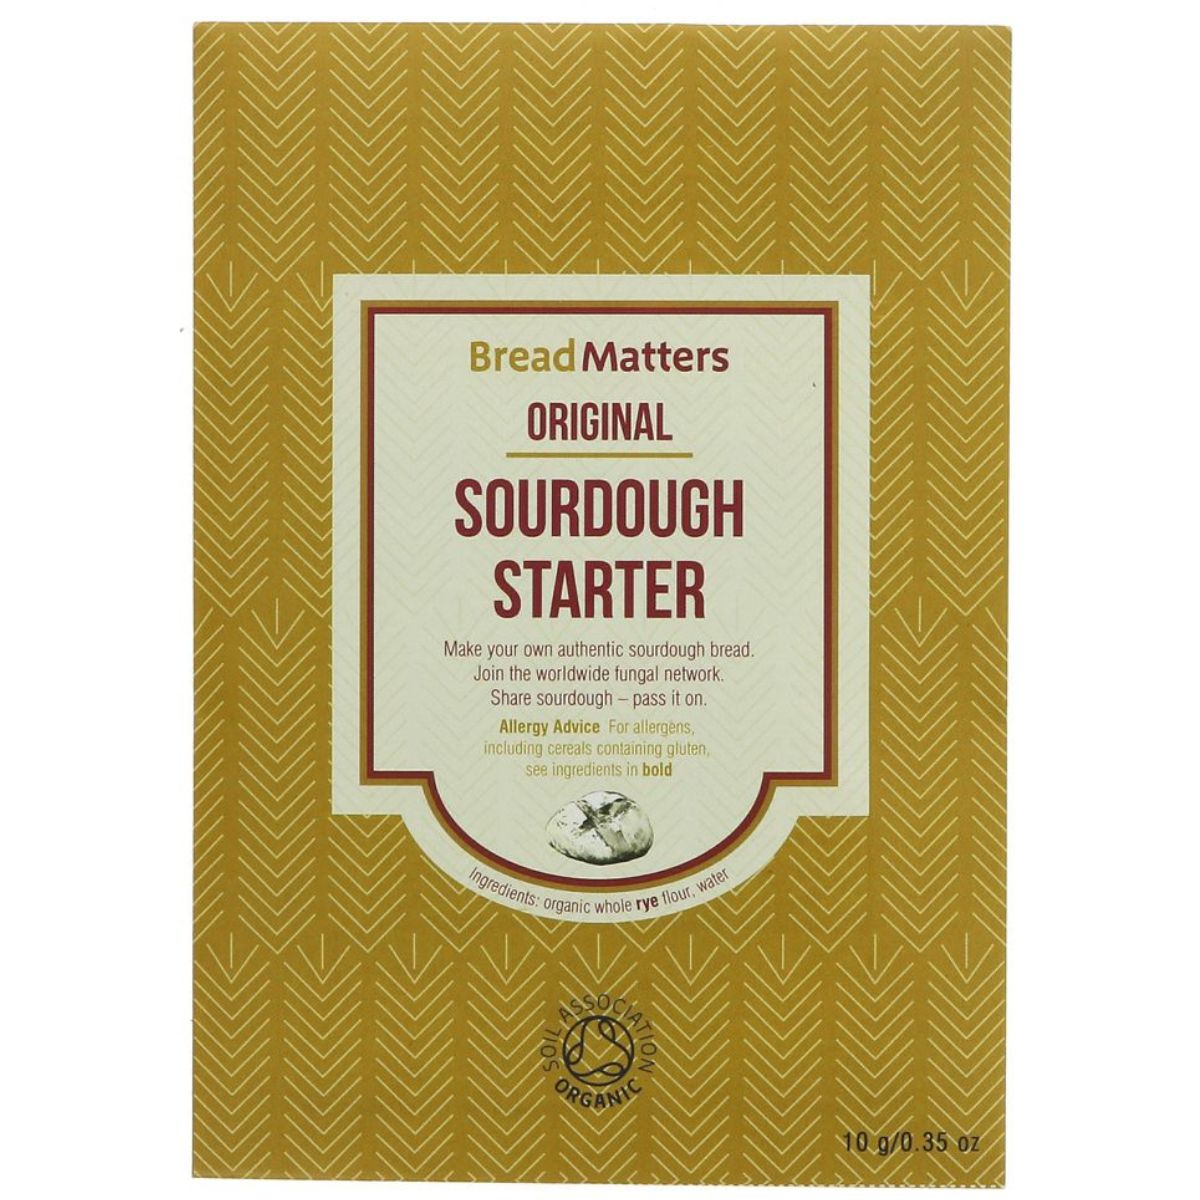 Bread Matters Original Sourdough Starter - 10g